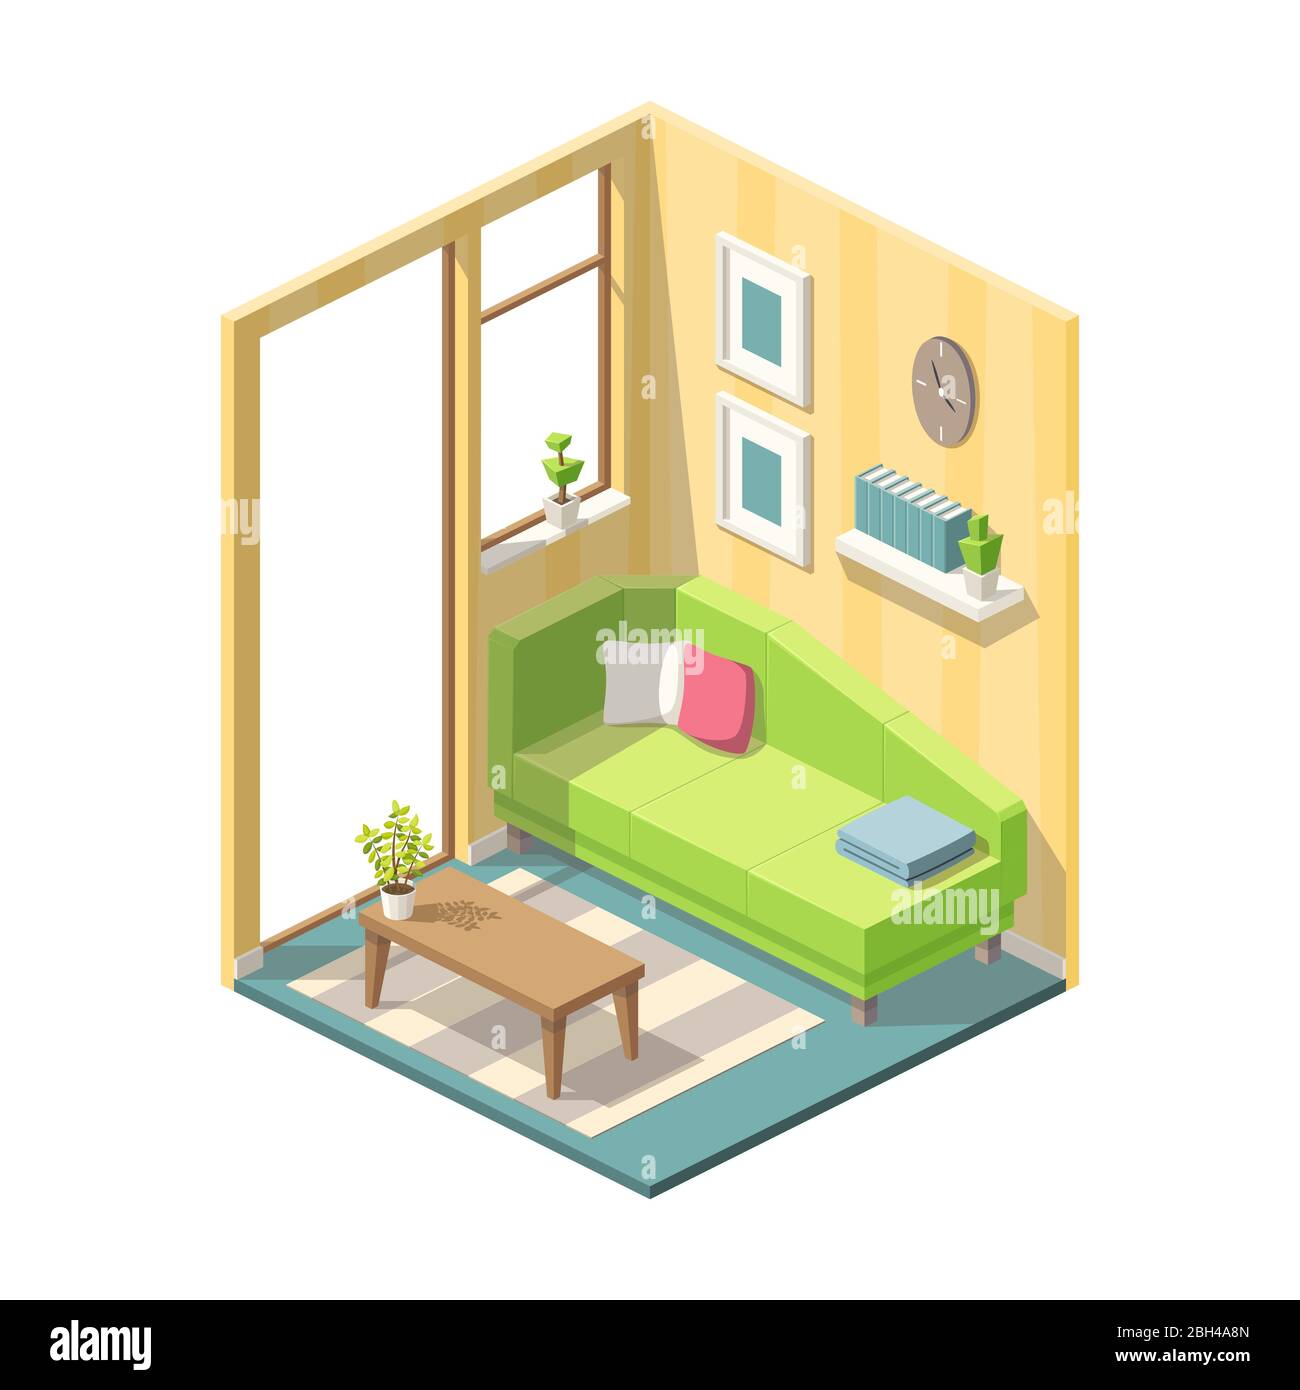 Isometrisches Wohnzimmer mit Möbeln. Vektorgrafiken mit separaten Ebenen. Stock Vektor